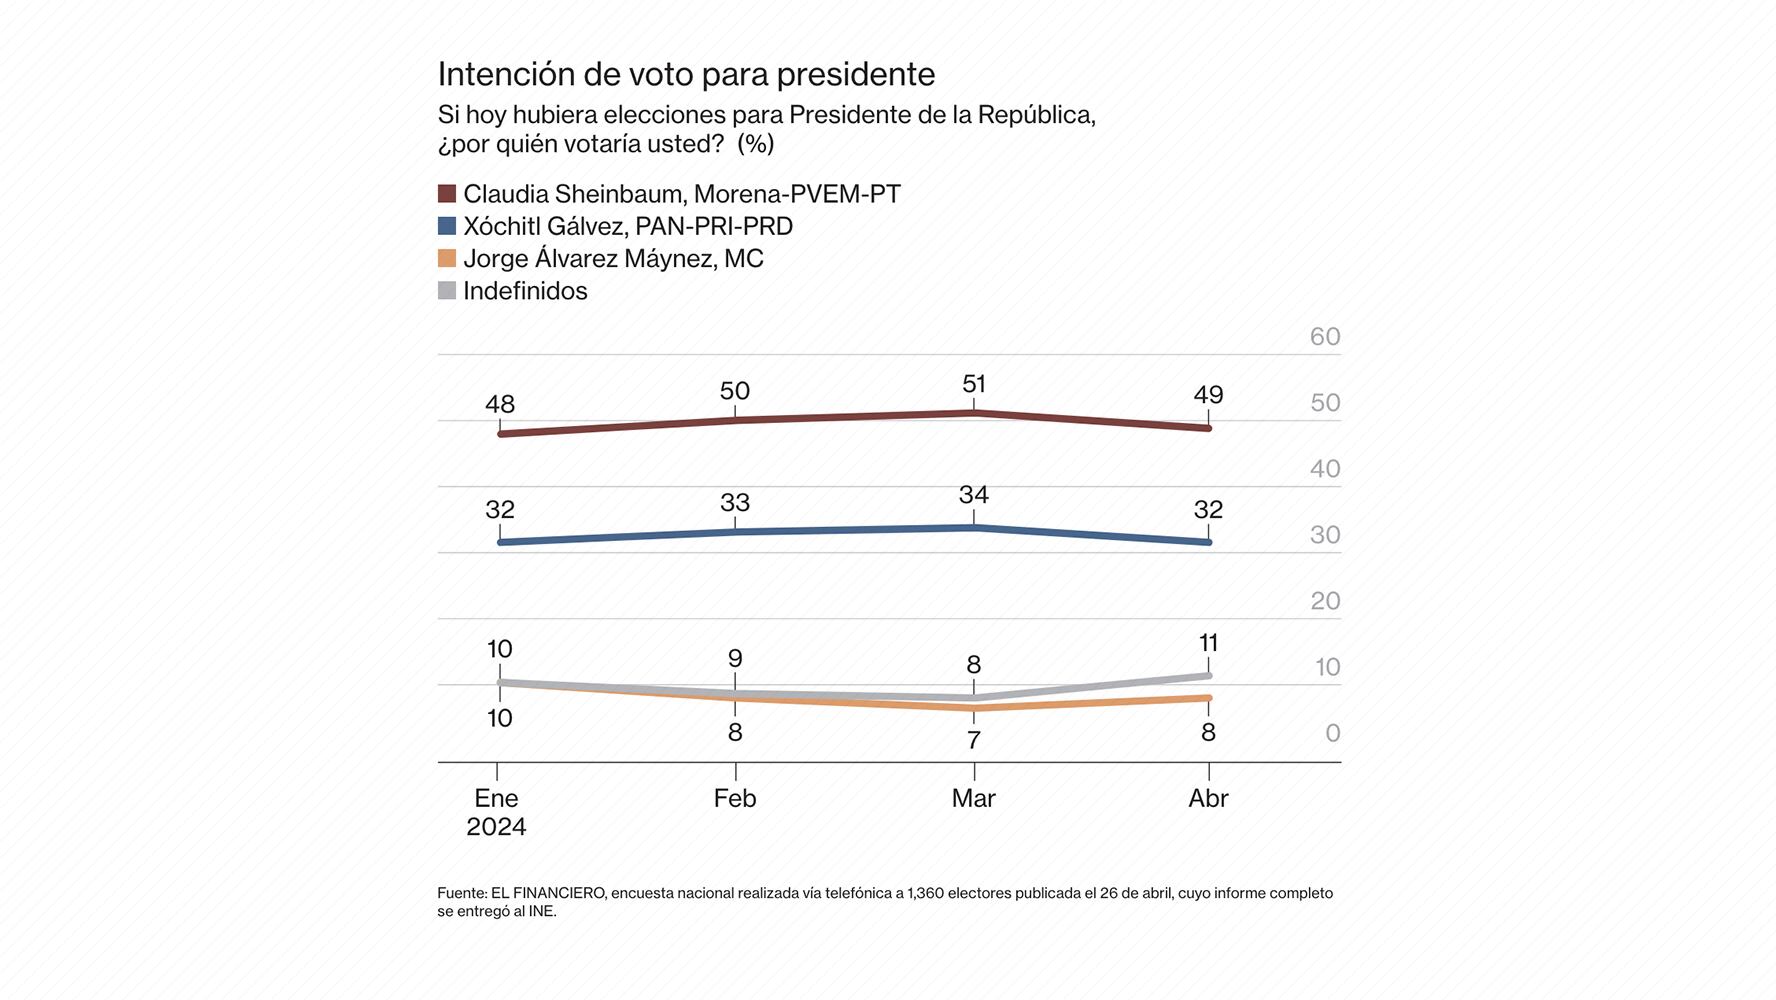 La encuesta nacional electoral de El Financiero, realizada vía telefónica a 1,360 electores y publicada el 26 de abril, coloca a Sheinbaum a la cabeza.